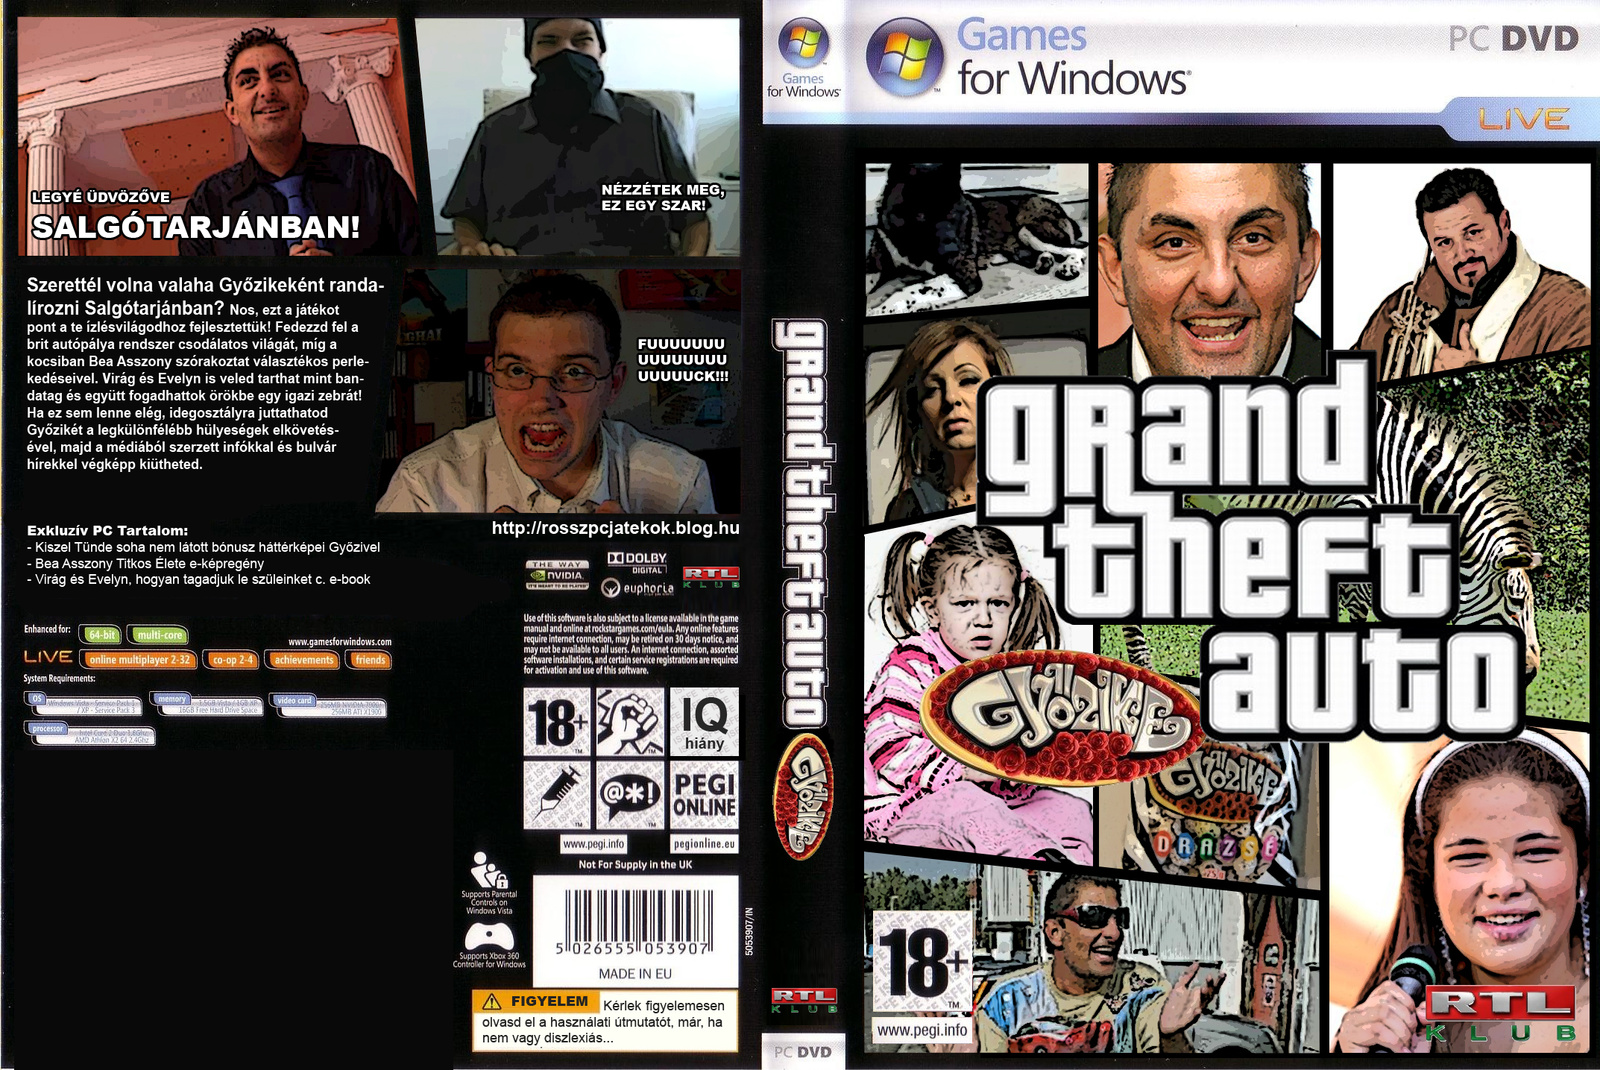 Grand Theft Auto Gyozike by Bezilon